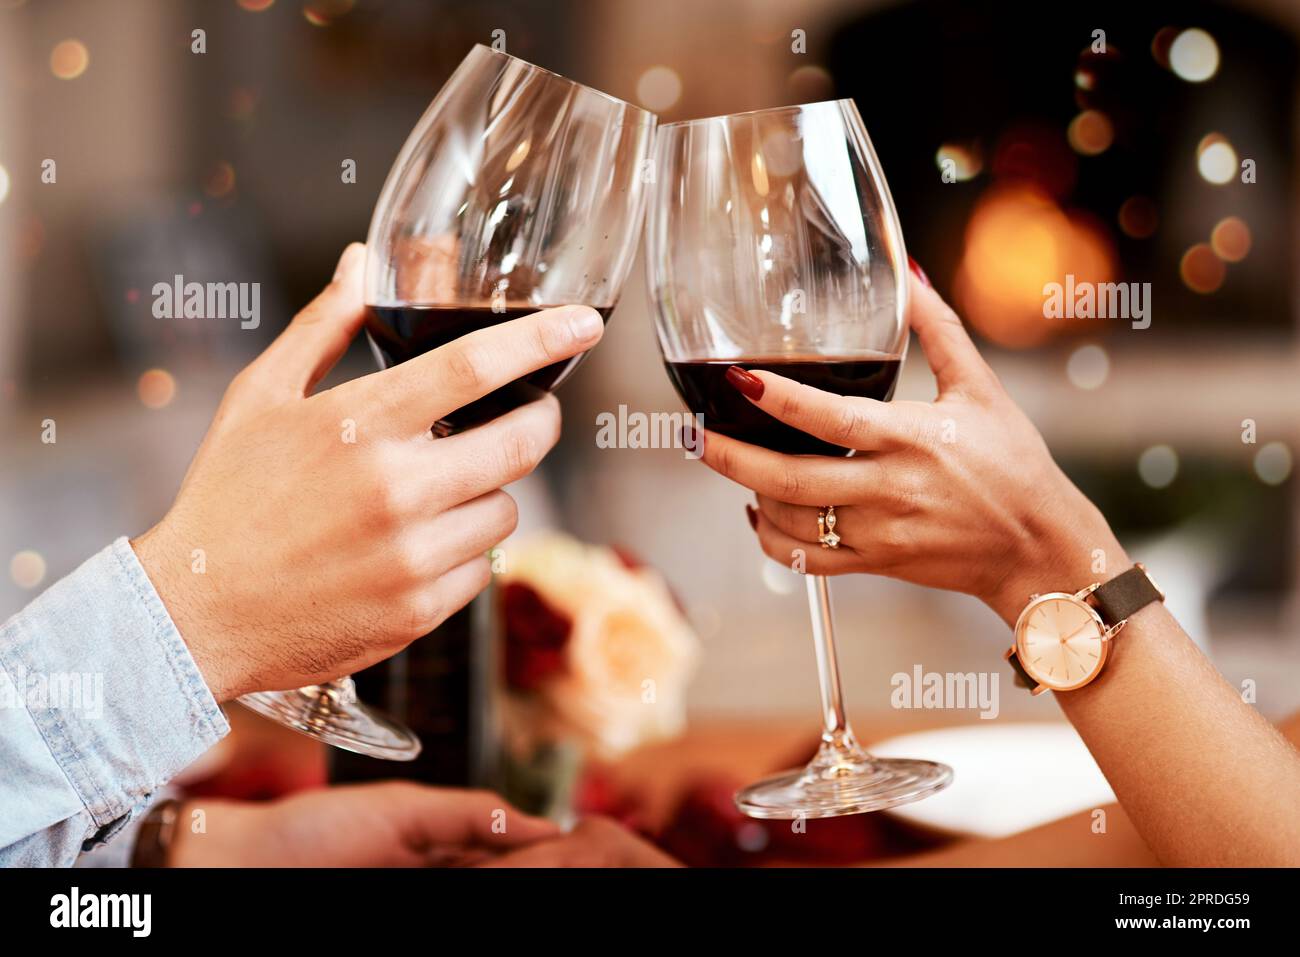 Des encouragements à l'amour et tout ce qui l'accompagne. Un couple marié partage un toast lors d'un dîner romantique. Banque D'Images